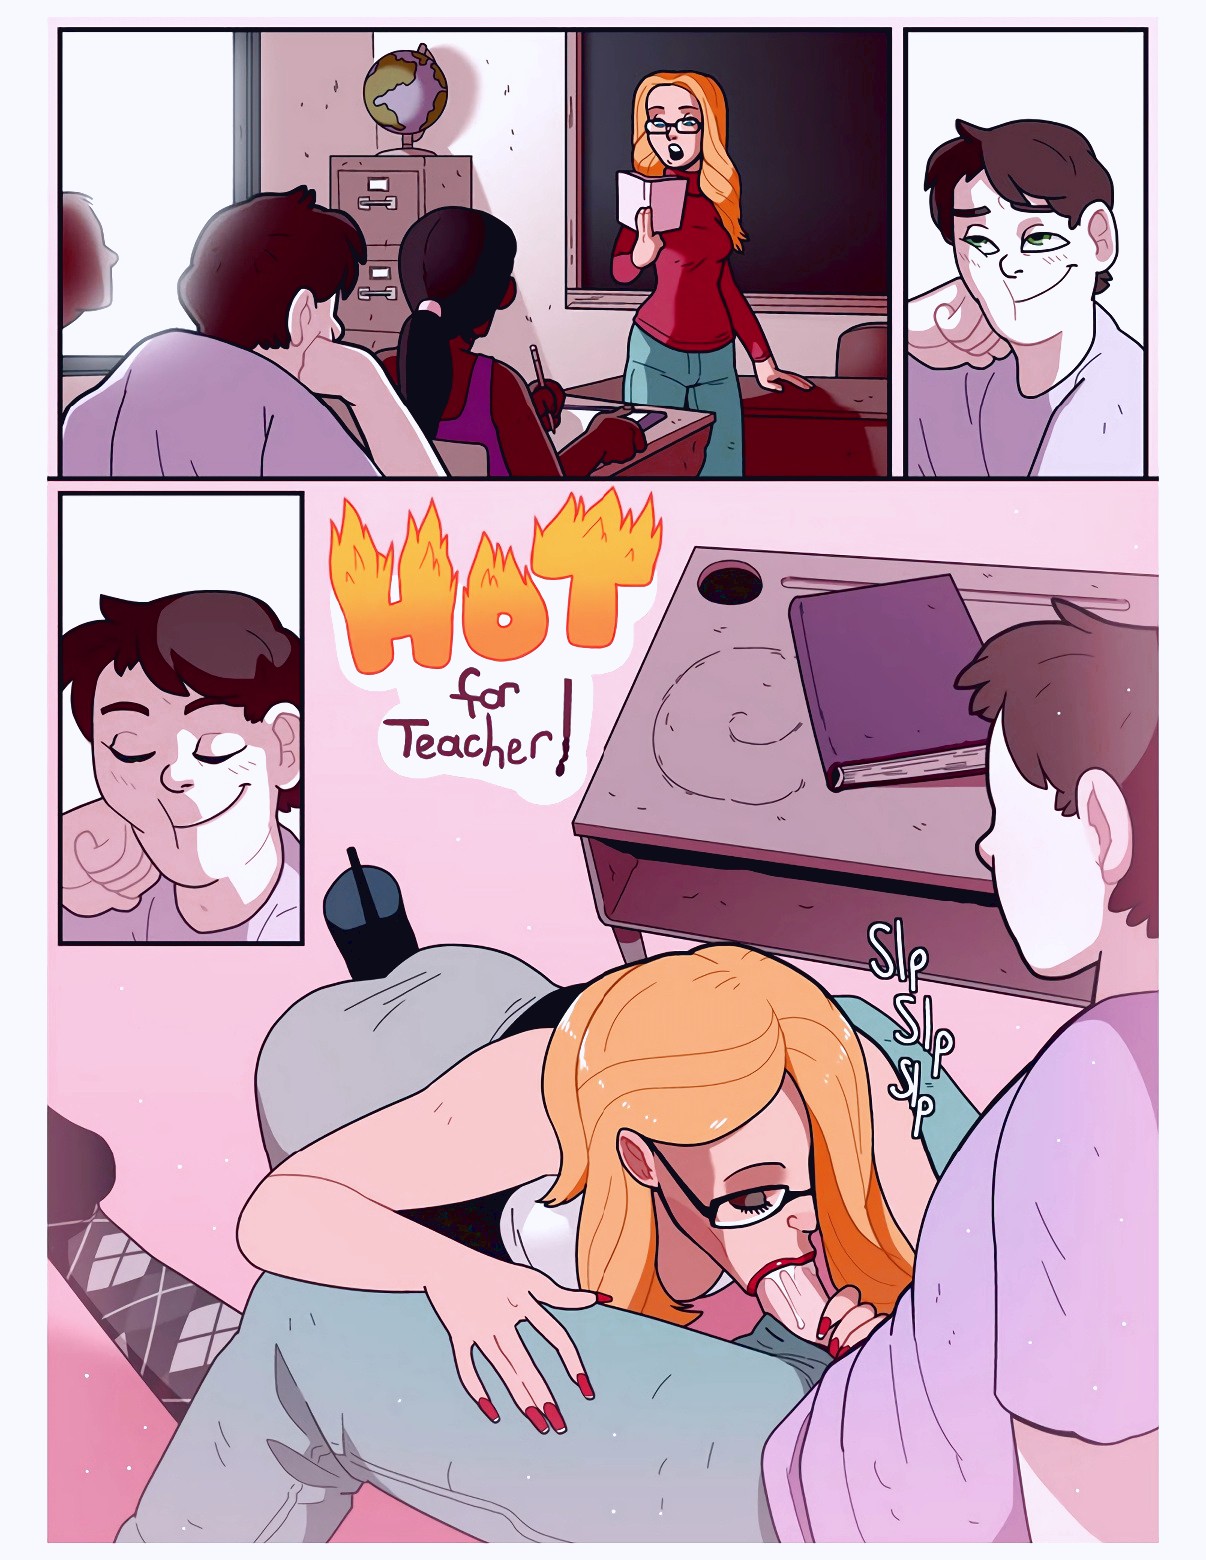 hot teacher porn cartoon